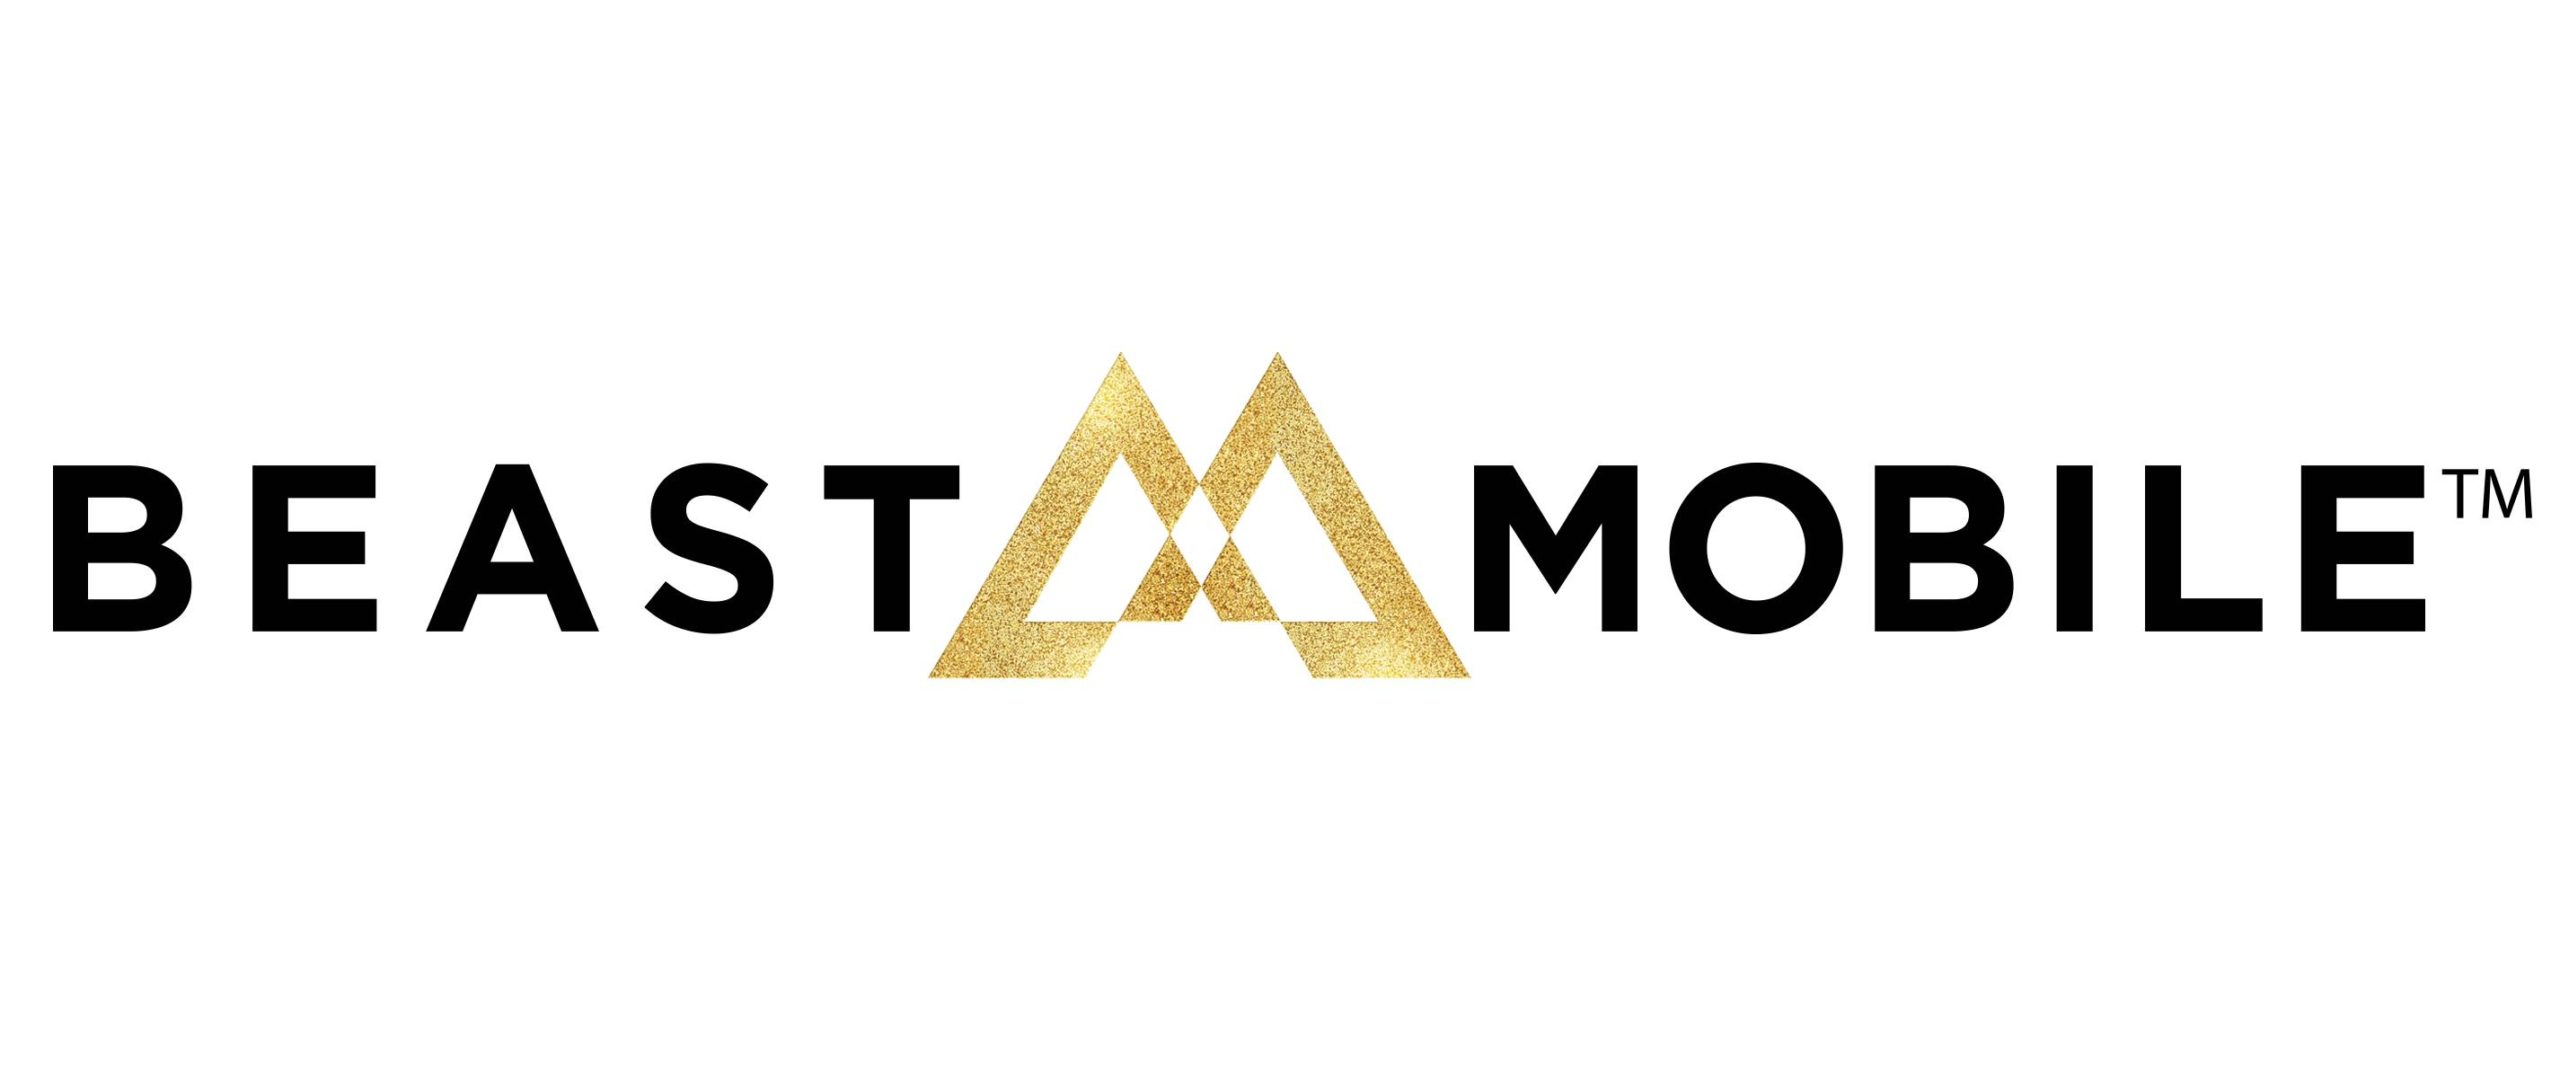 Beast-mobile-logo